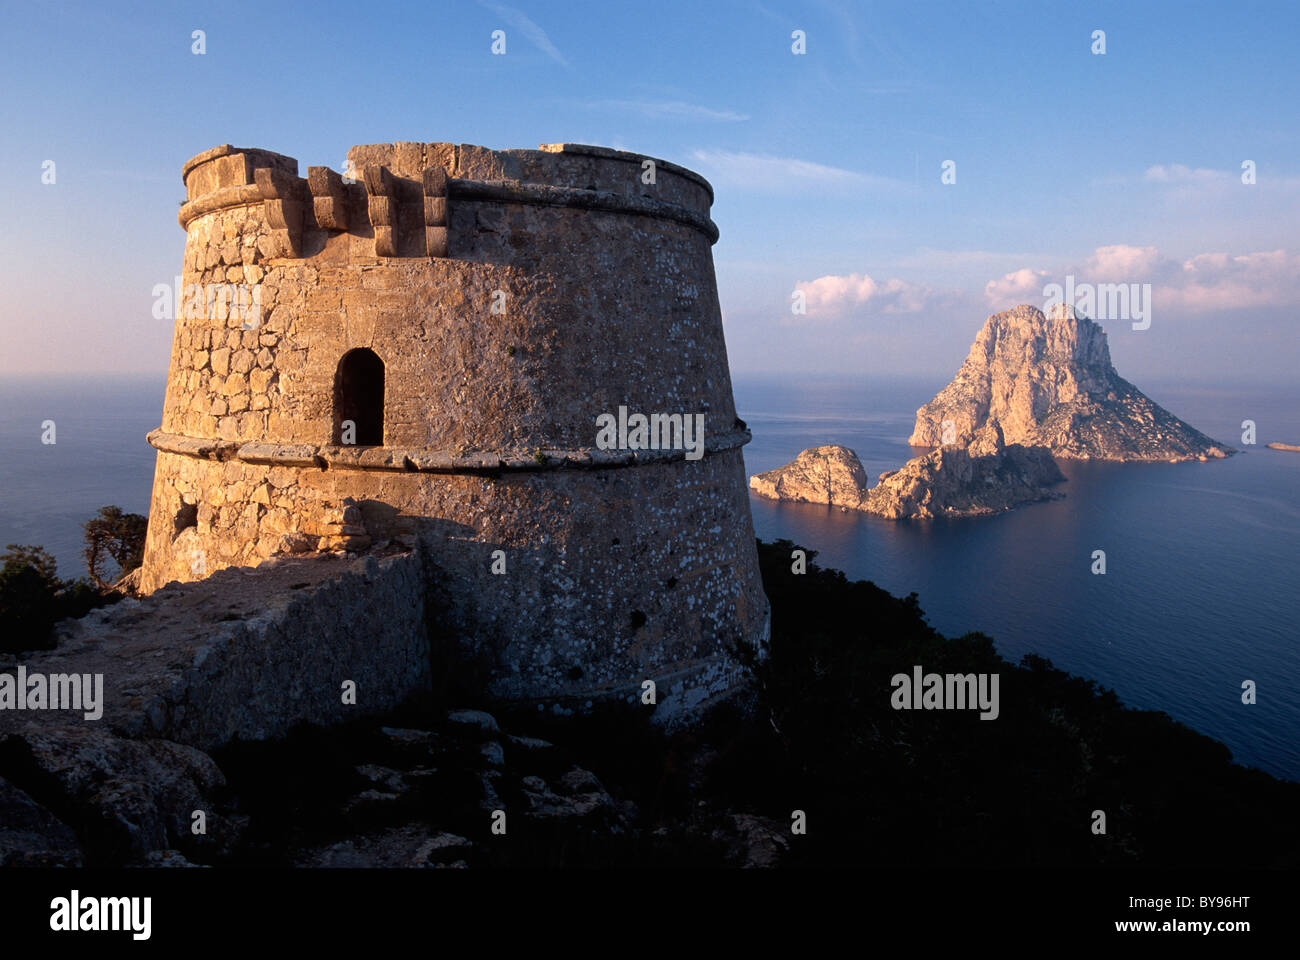 Isle Es Vedra, Wachturm Torre del Pirata (= Torre des Savinar),  Cap del Jueu, Ibiza, Spain Stock Photo